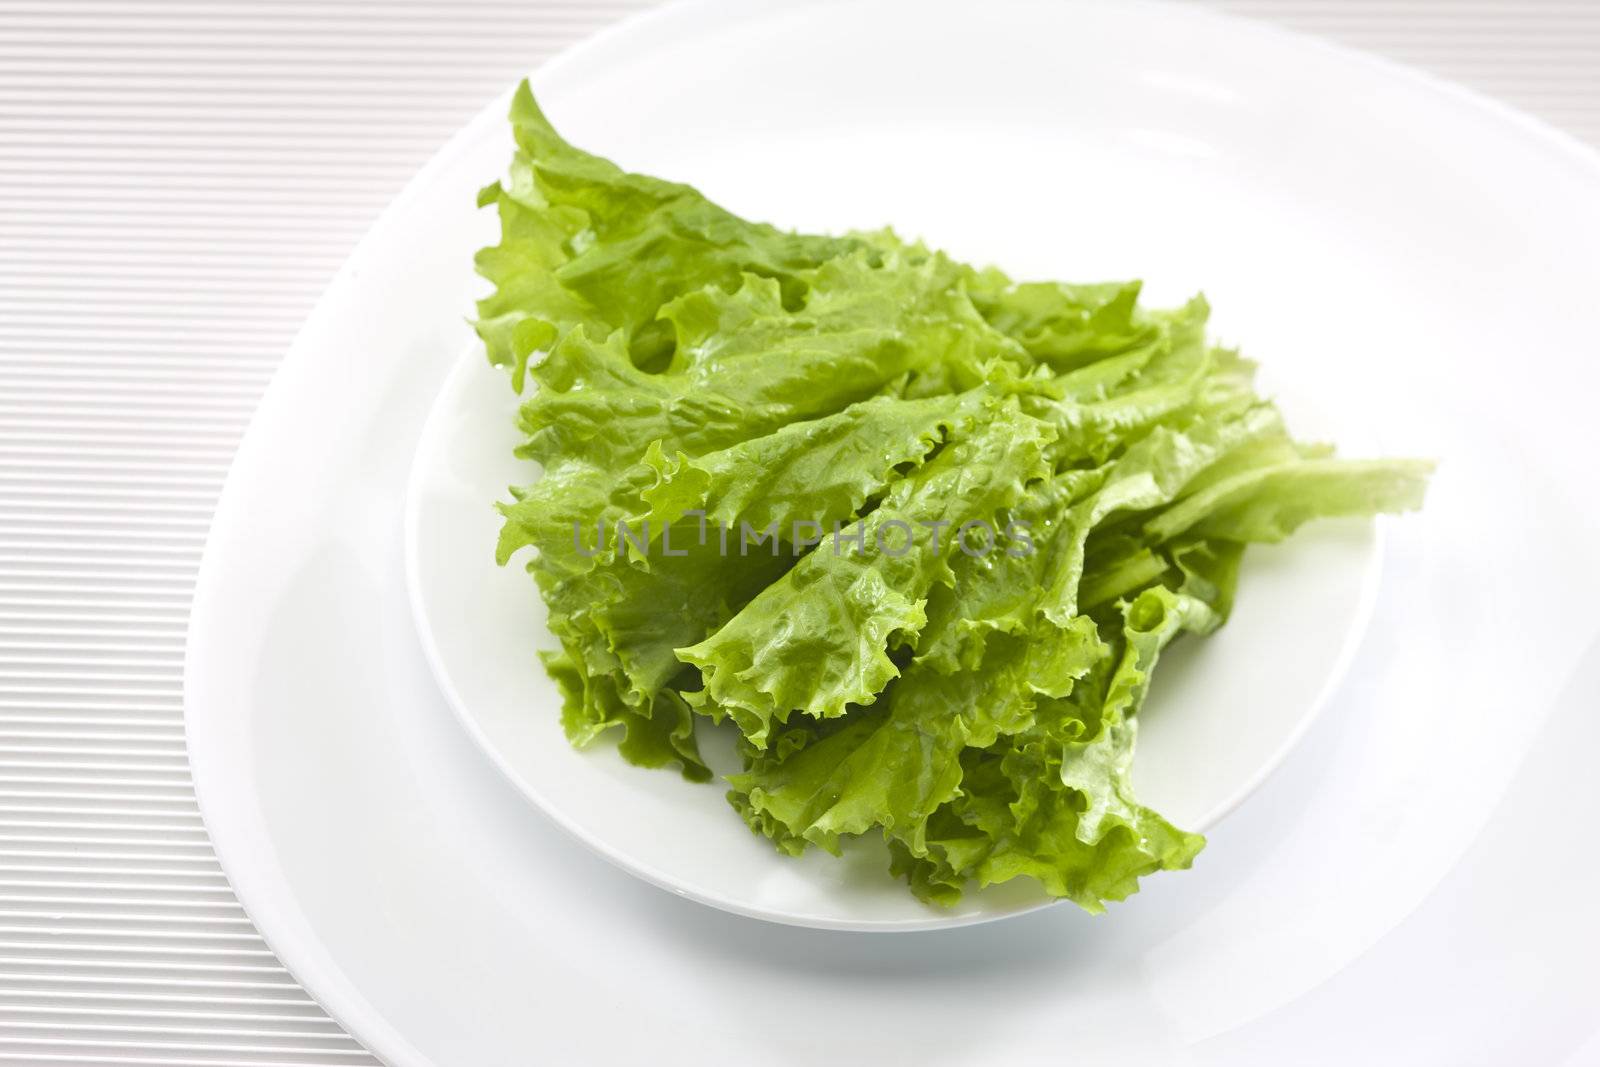 food series: fresh ripe green lettuce on white plate